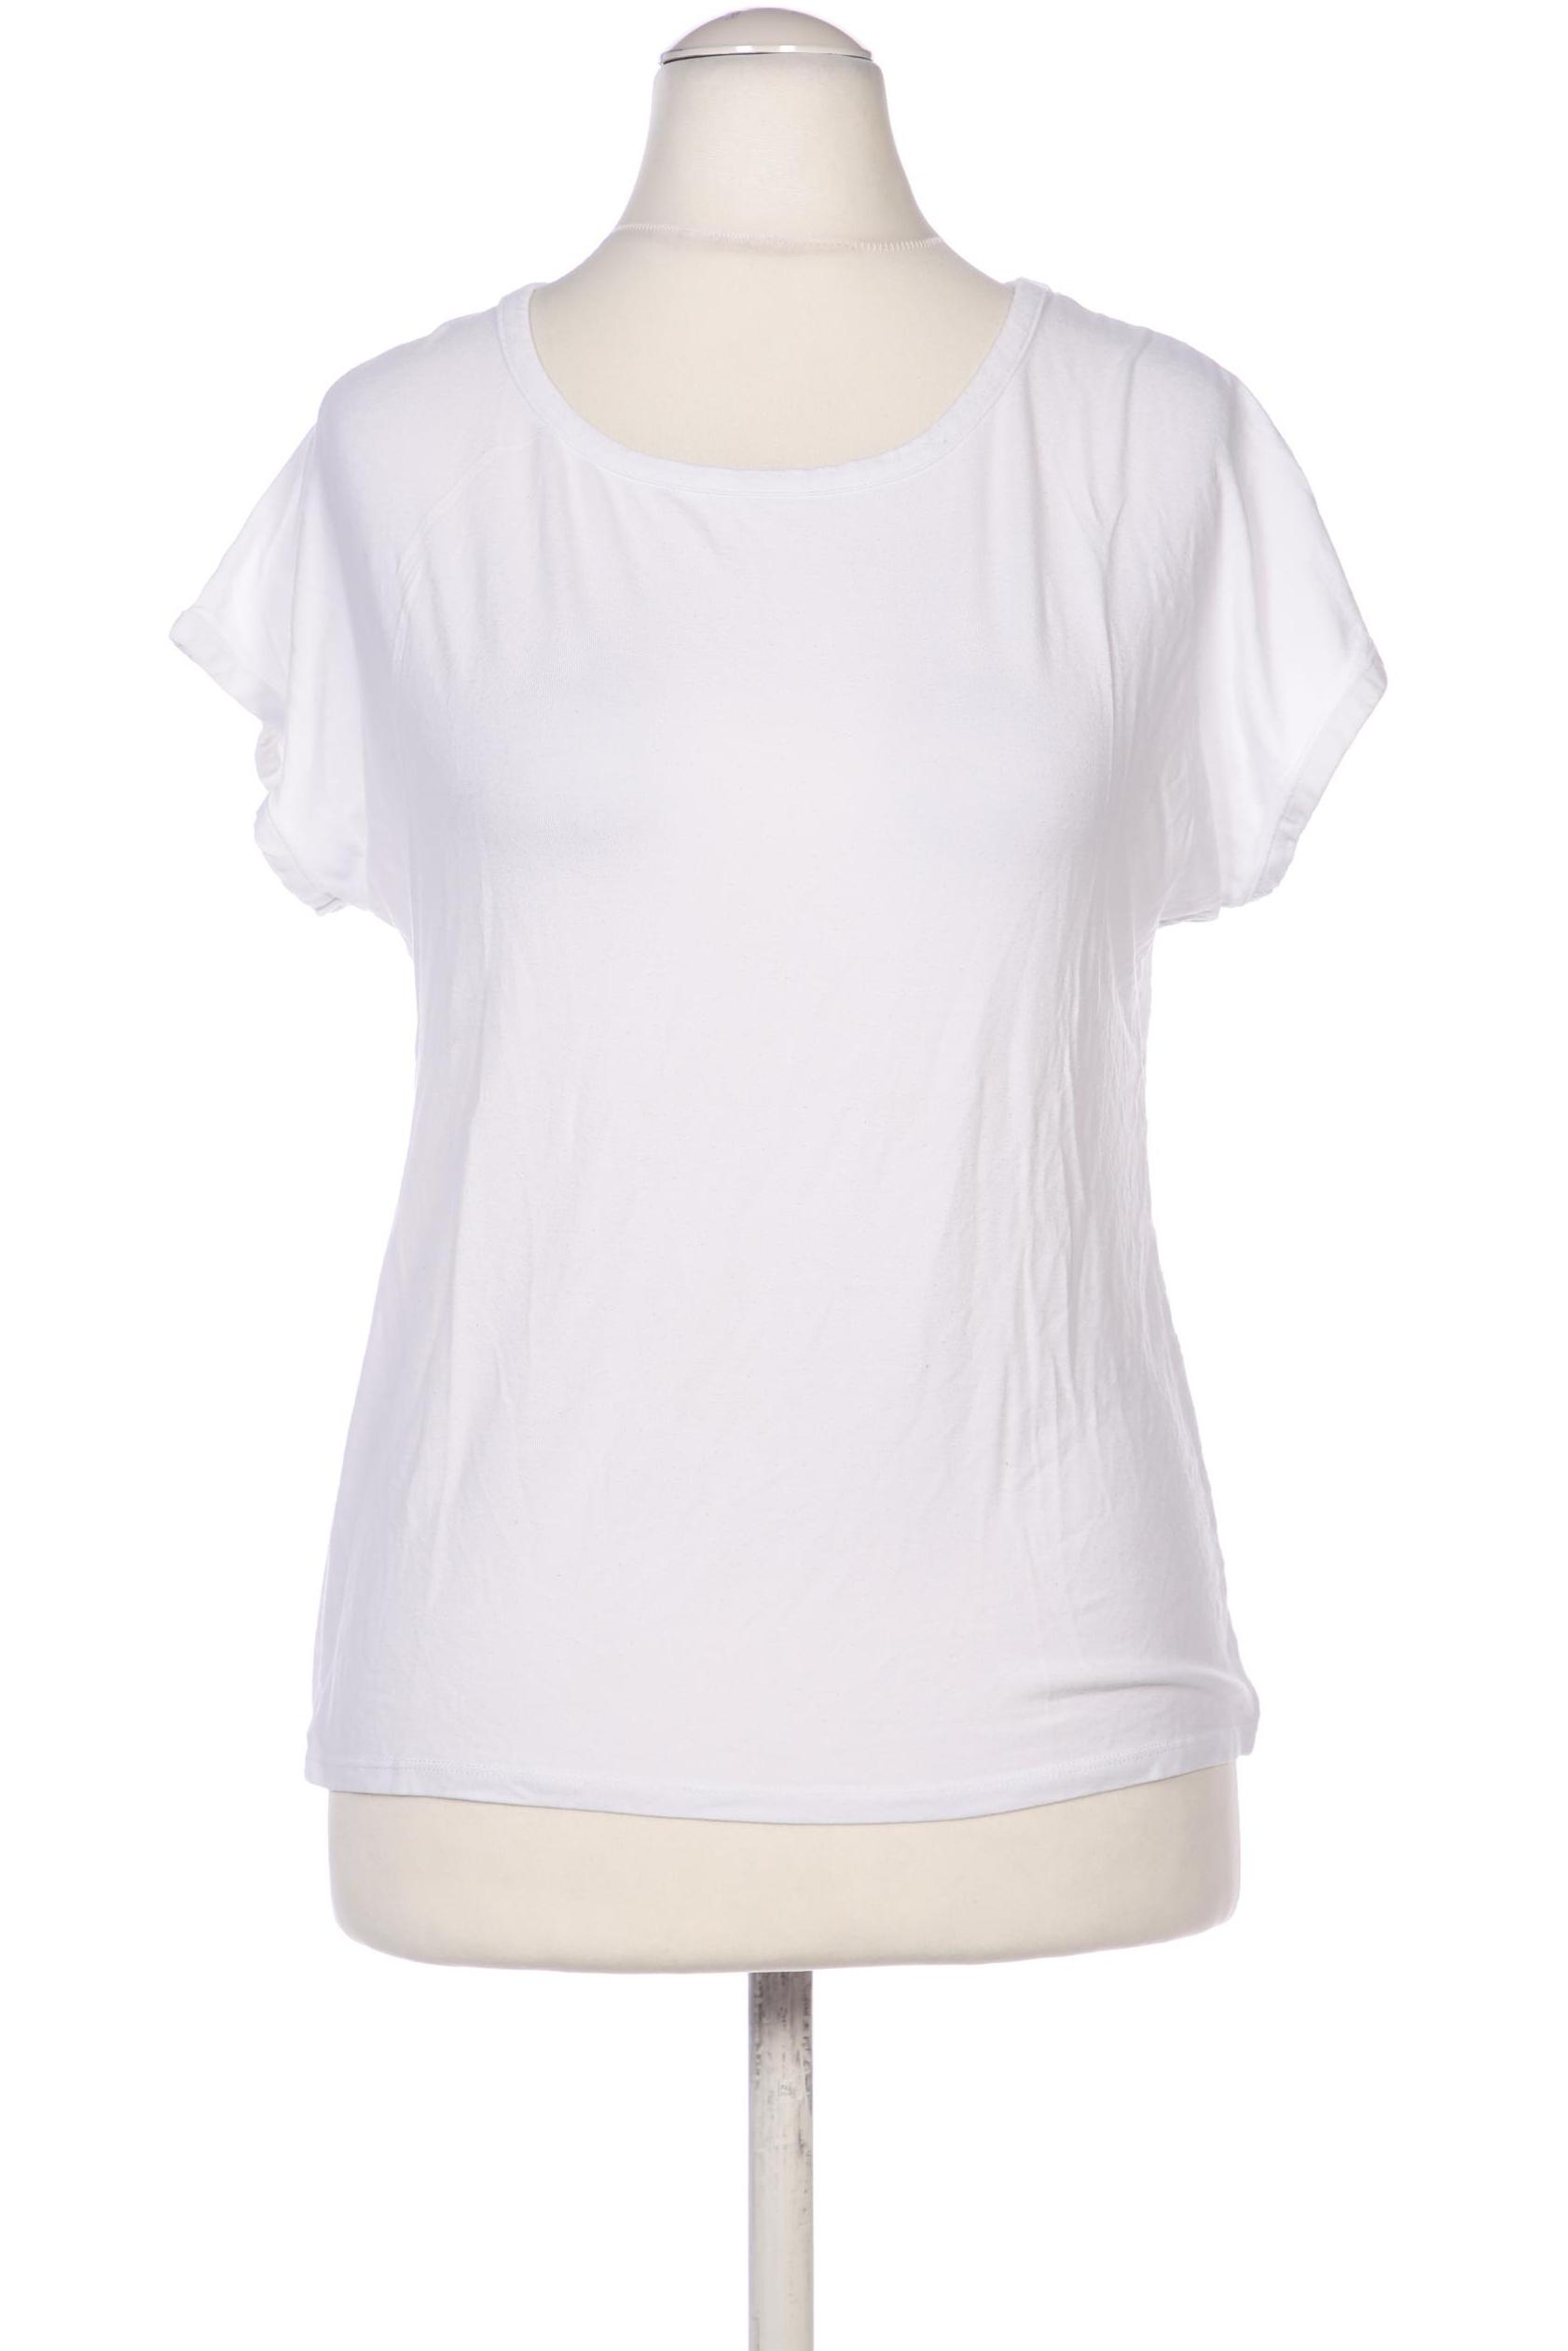 Stefanel Damen T-Shirt, weiß, Gr. 38 von Stefanel